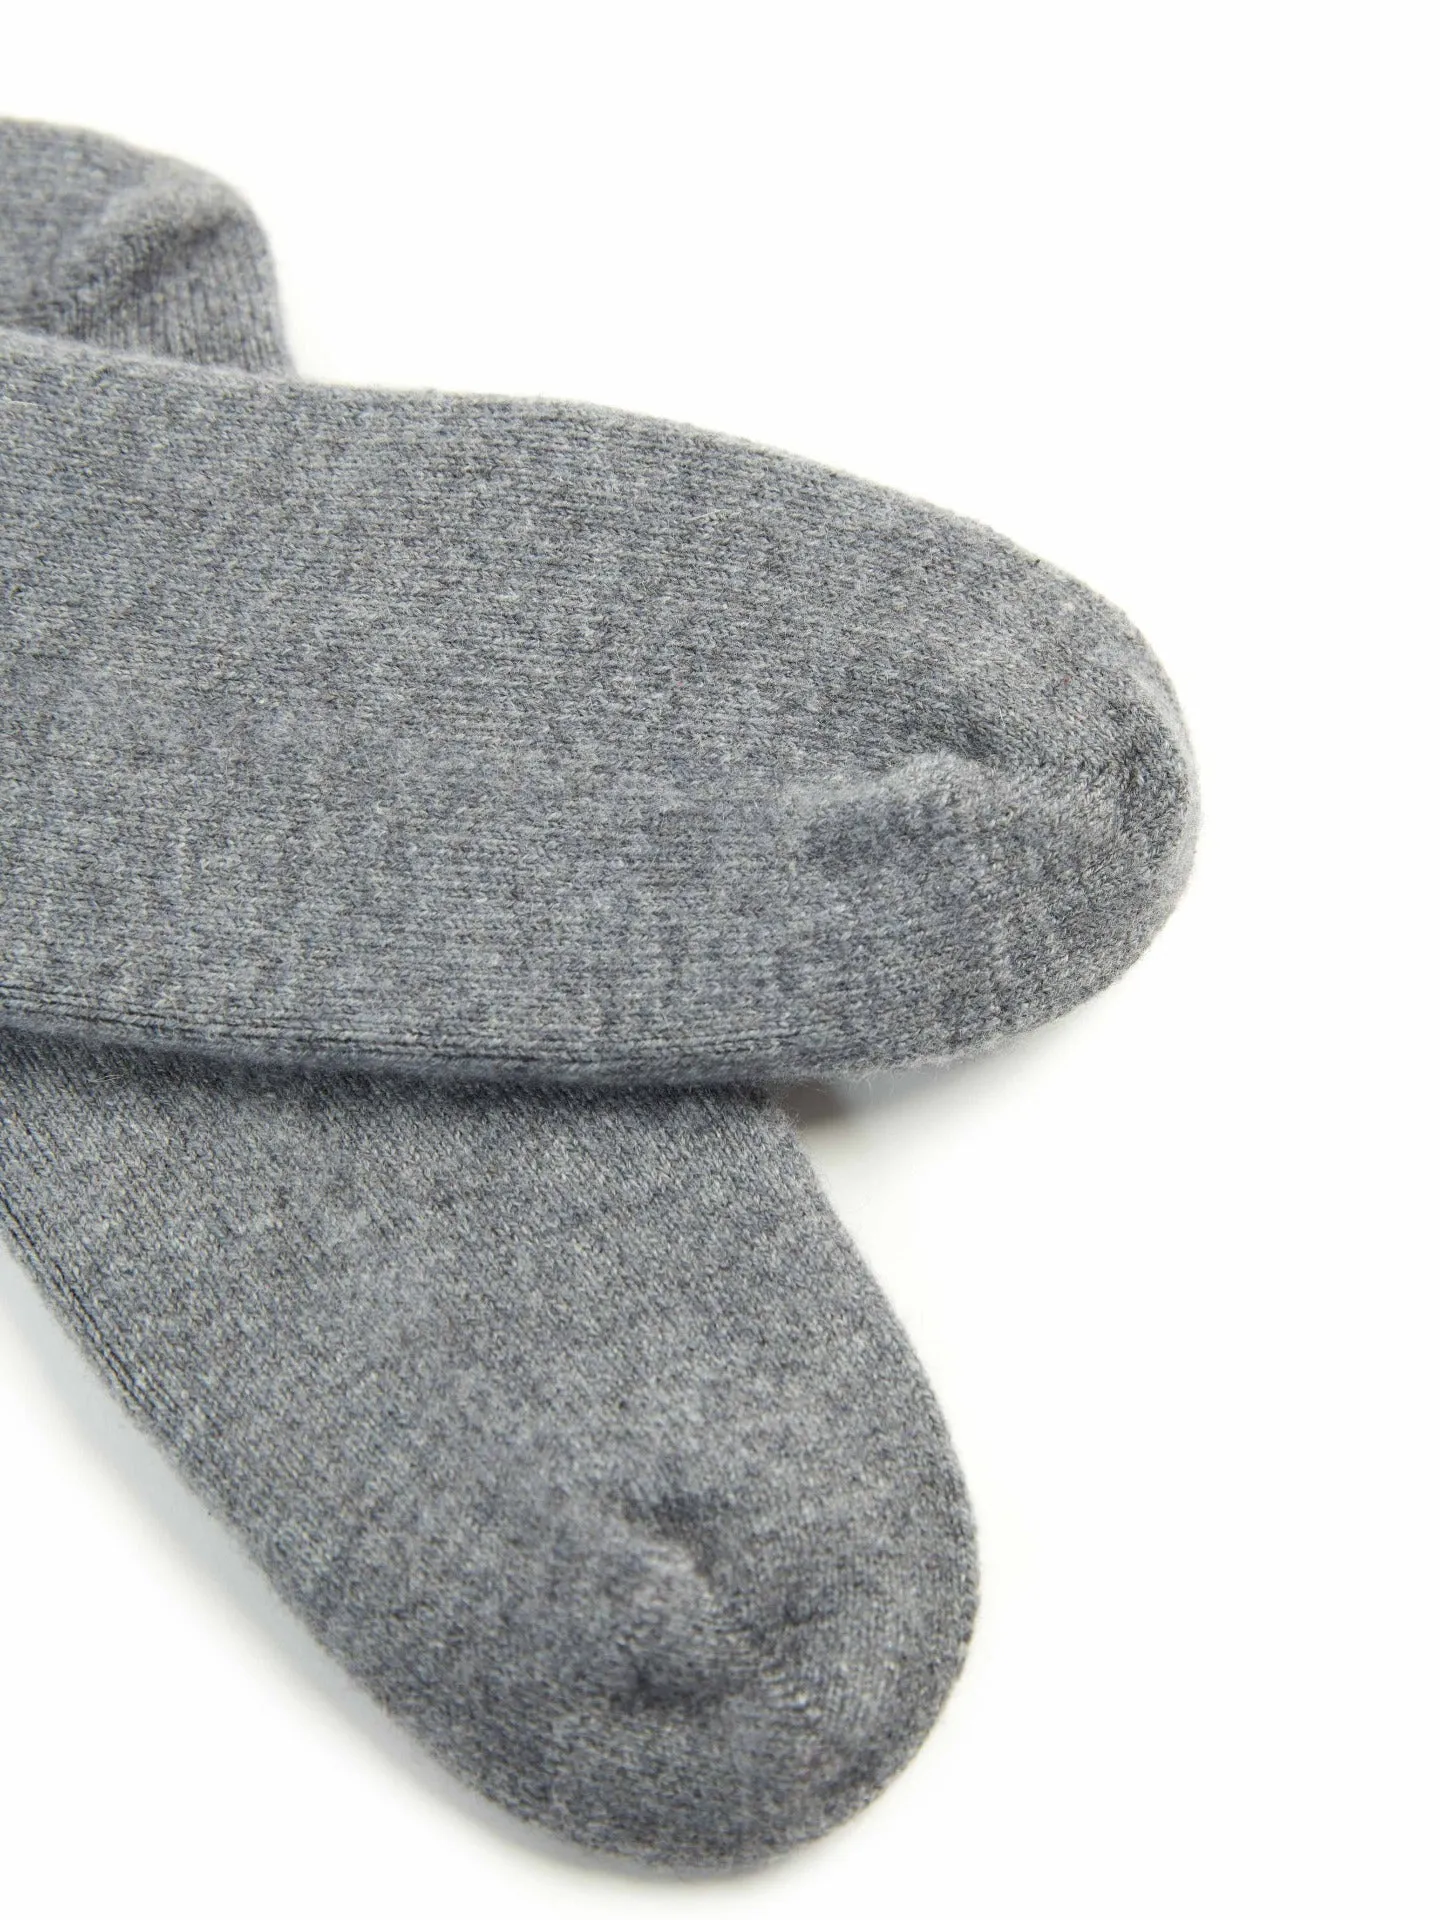 Women's Trim Knit Socks Dim Gray - Gobi Cashmere